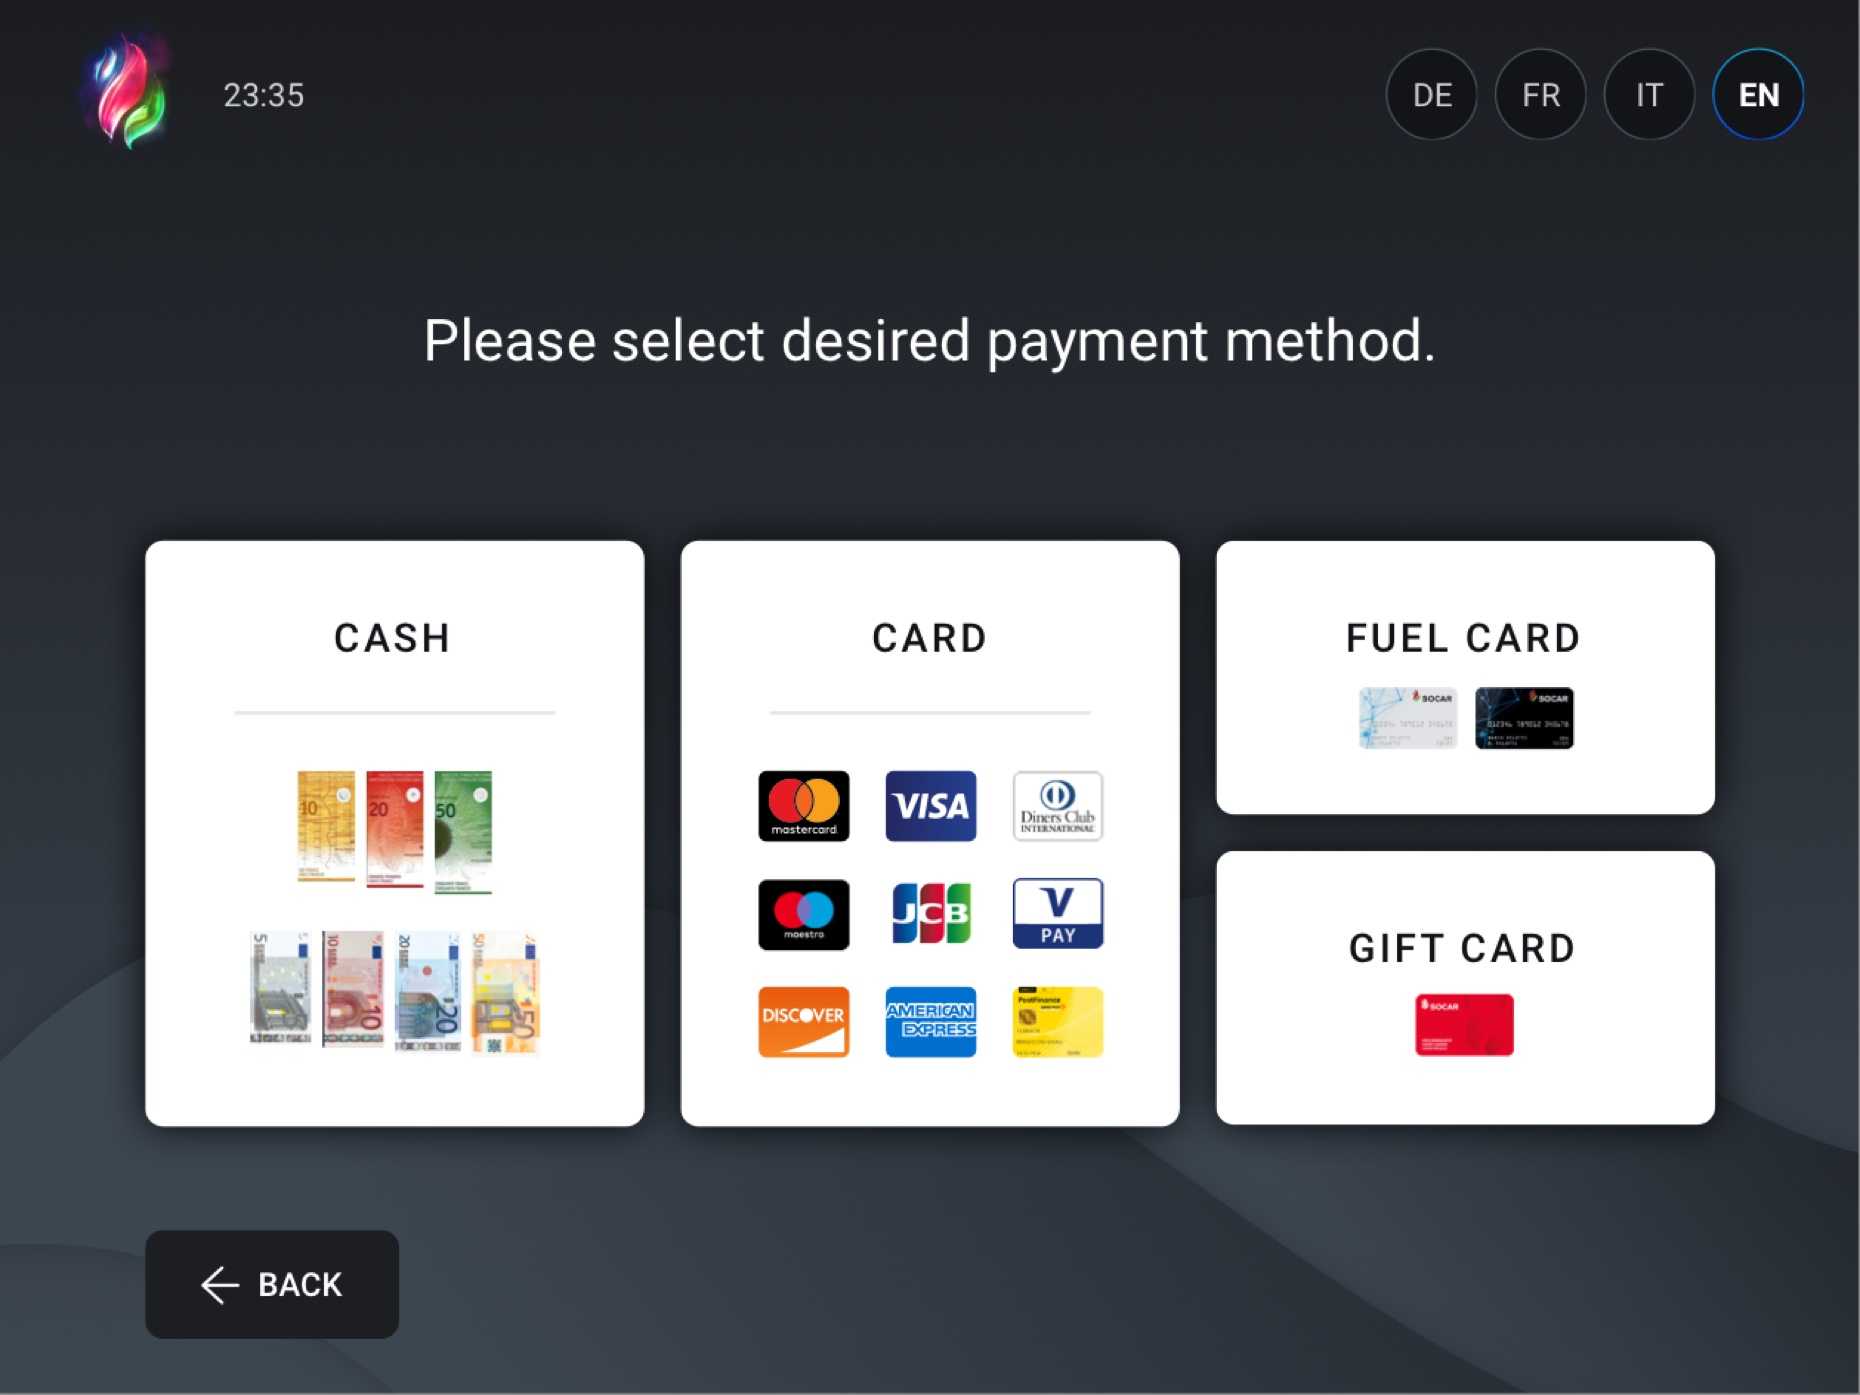 UI Design für Bezahlautomat mit Auswahl der Bezahlmethode